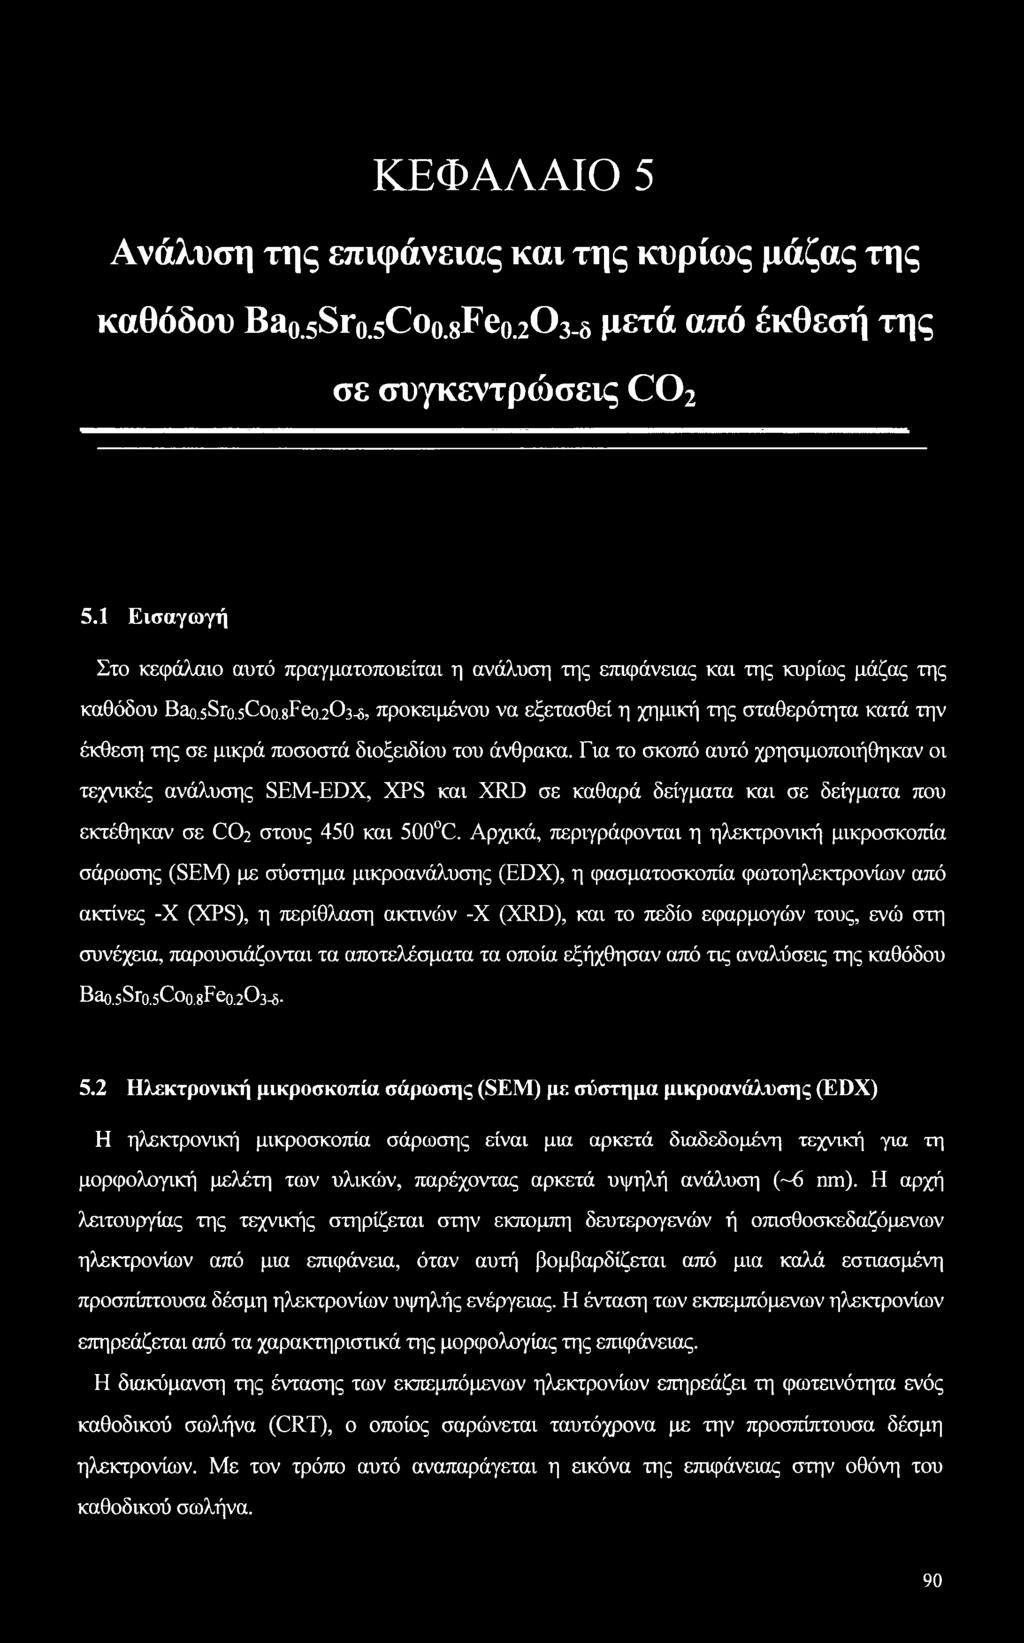 203-5, προκειμένου να εξετασθεί η χημική της σταθερότητα κατά την έκθεση της σε μικρά ποσοστά διοξειδίου του άνθρακα.